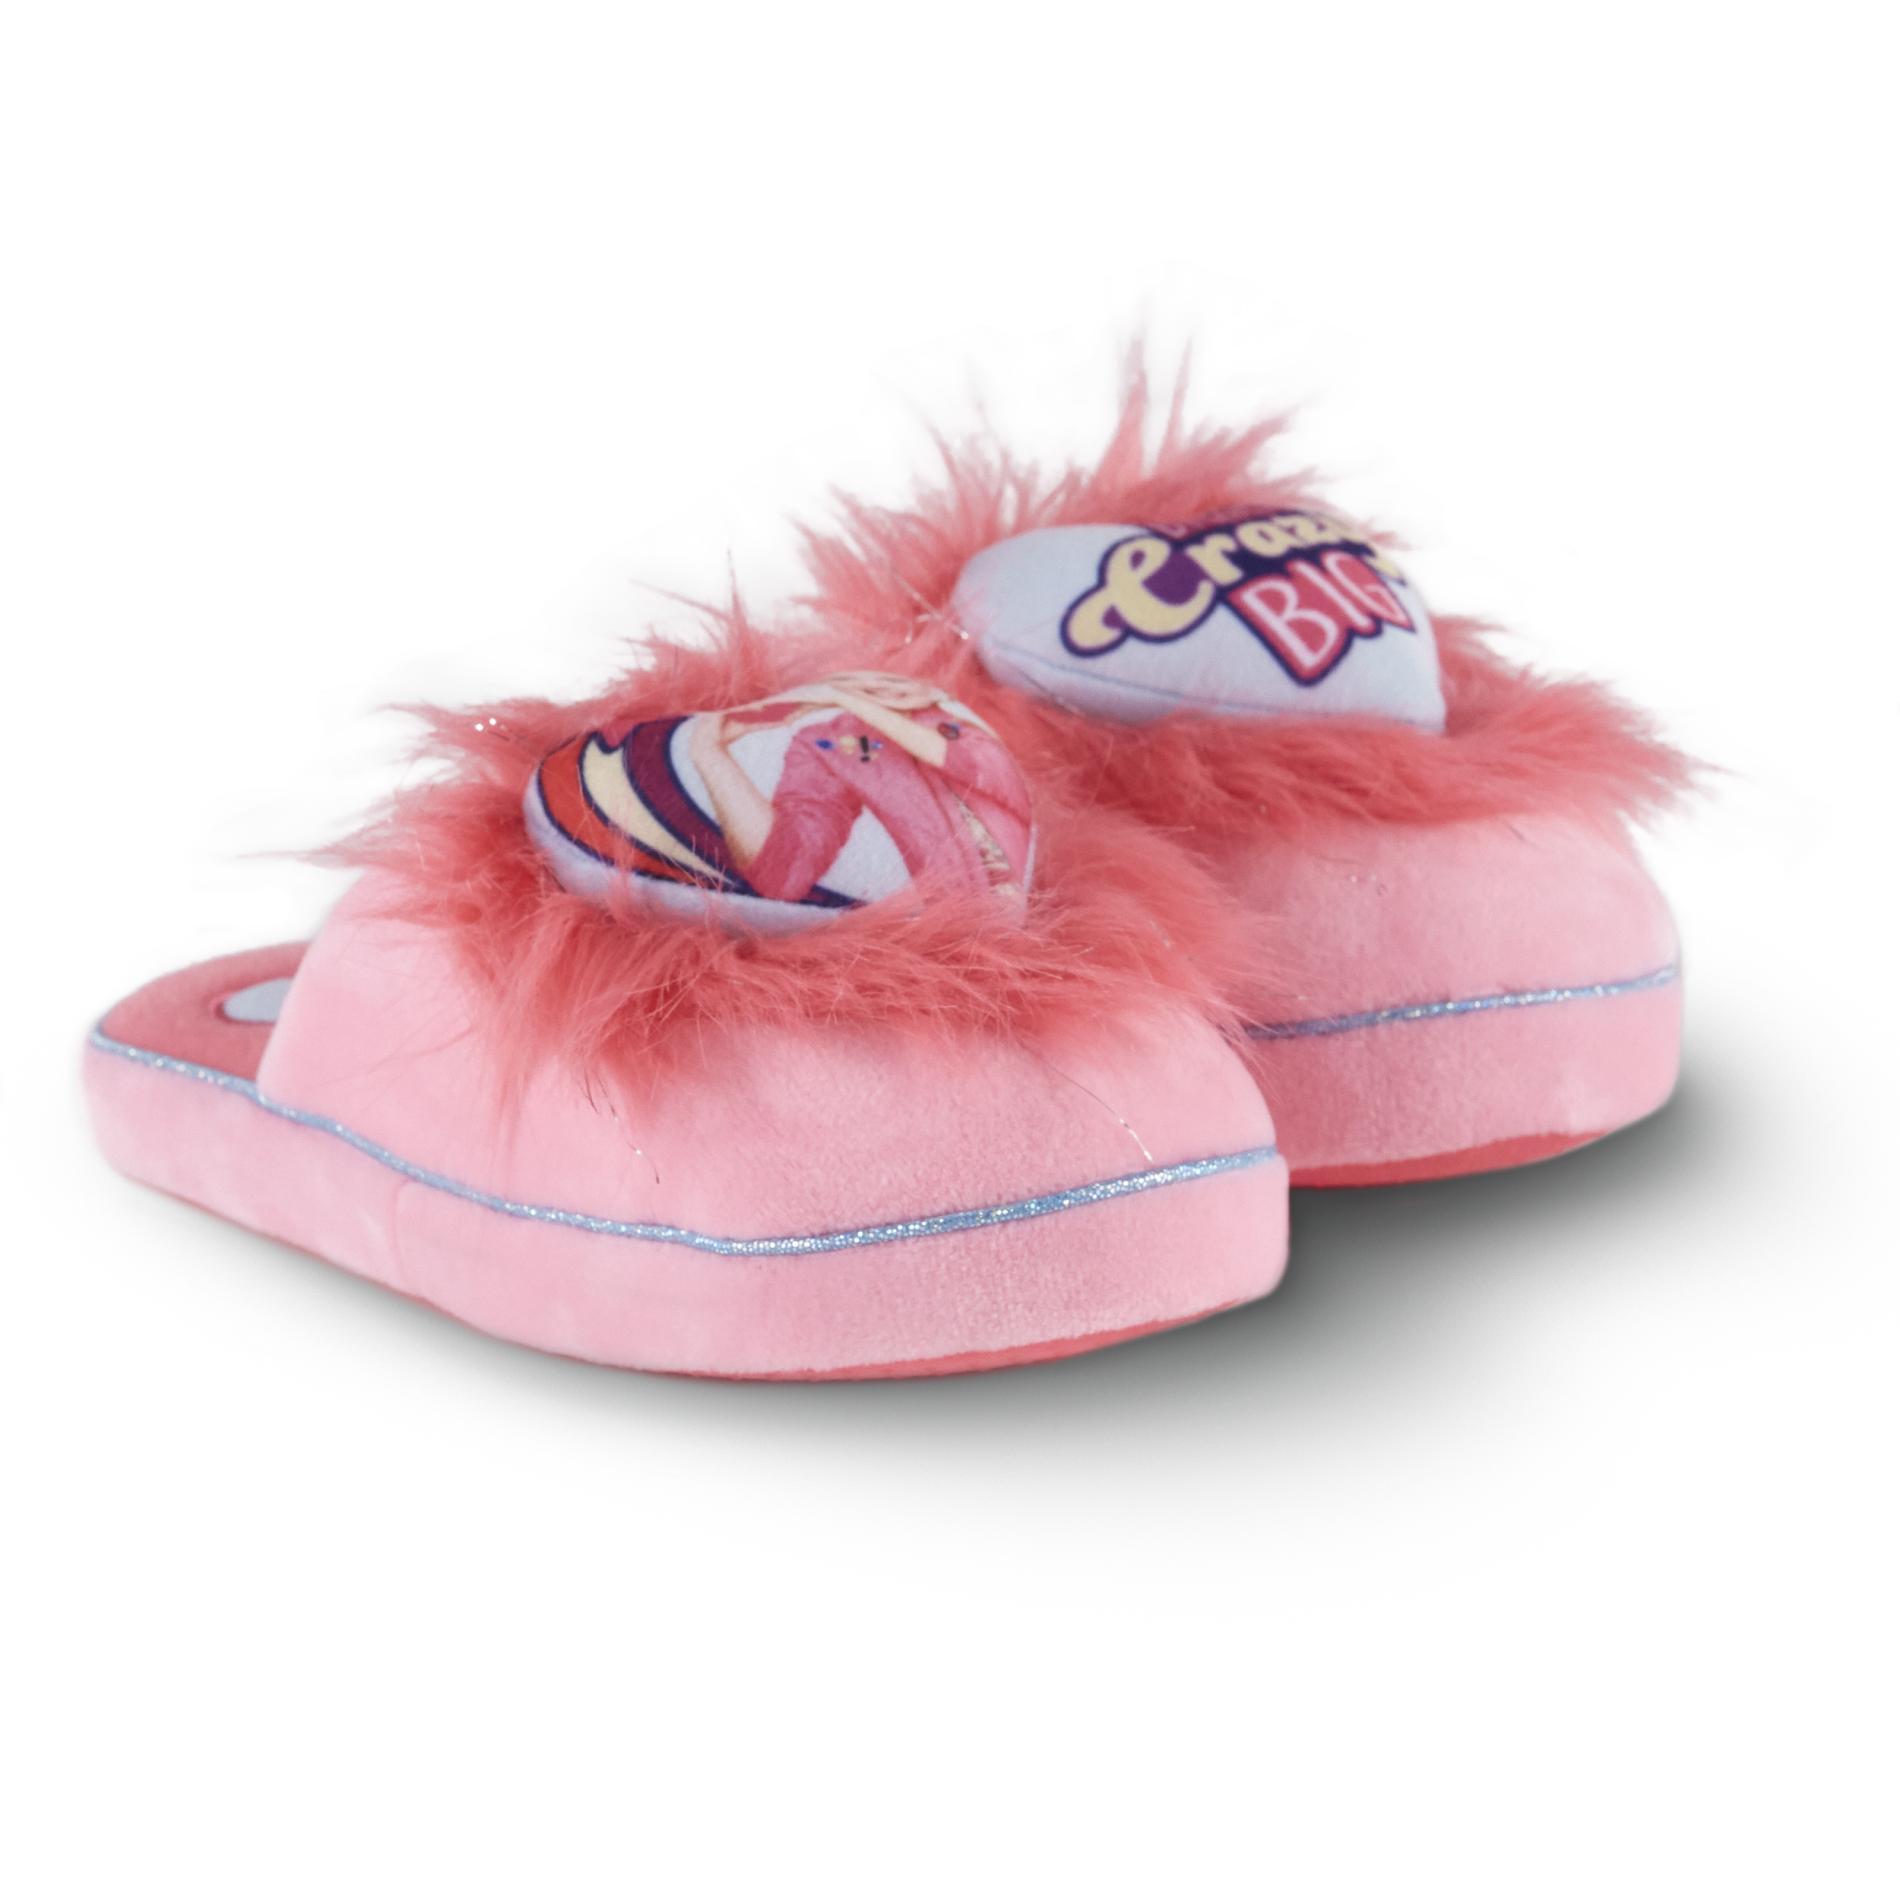 childrens slippers kmart